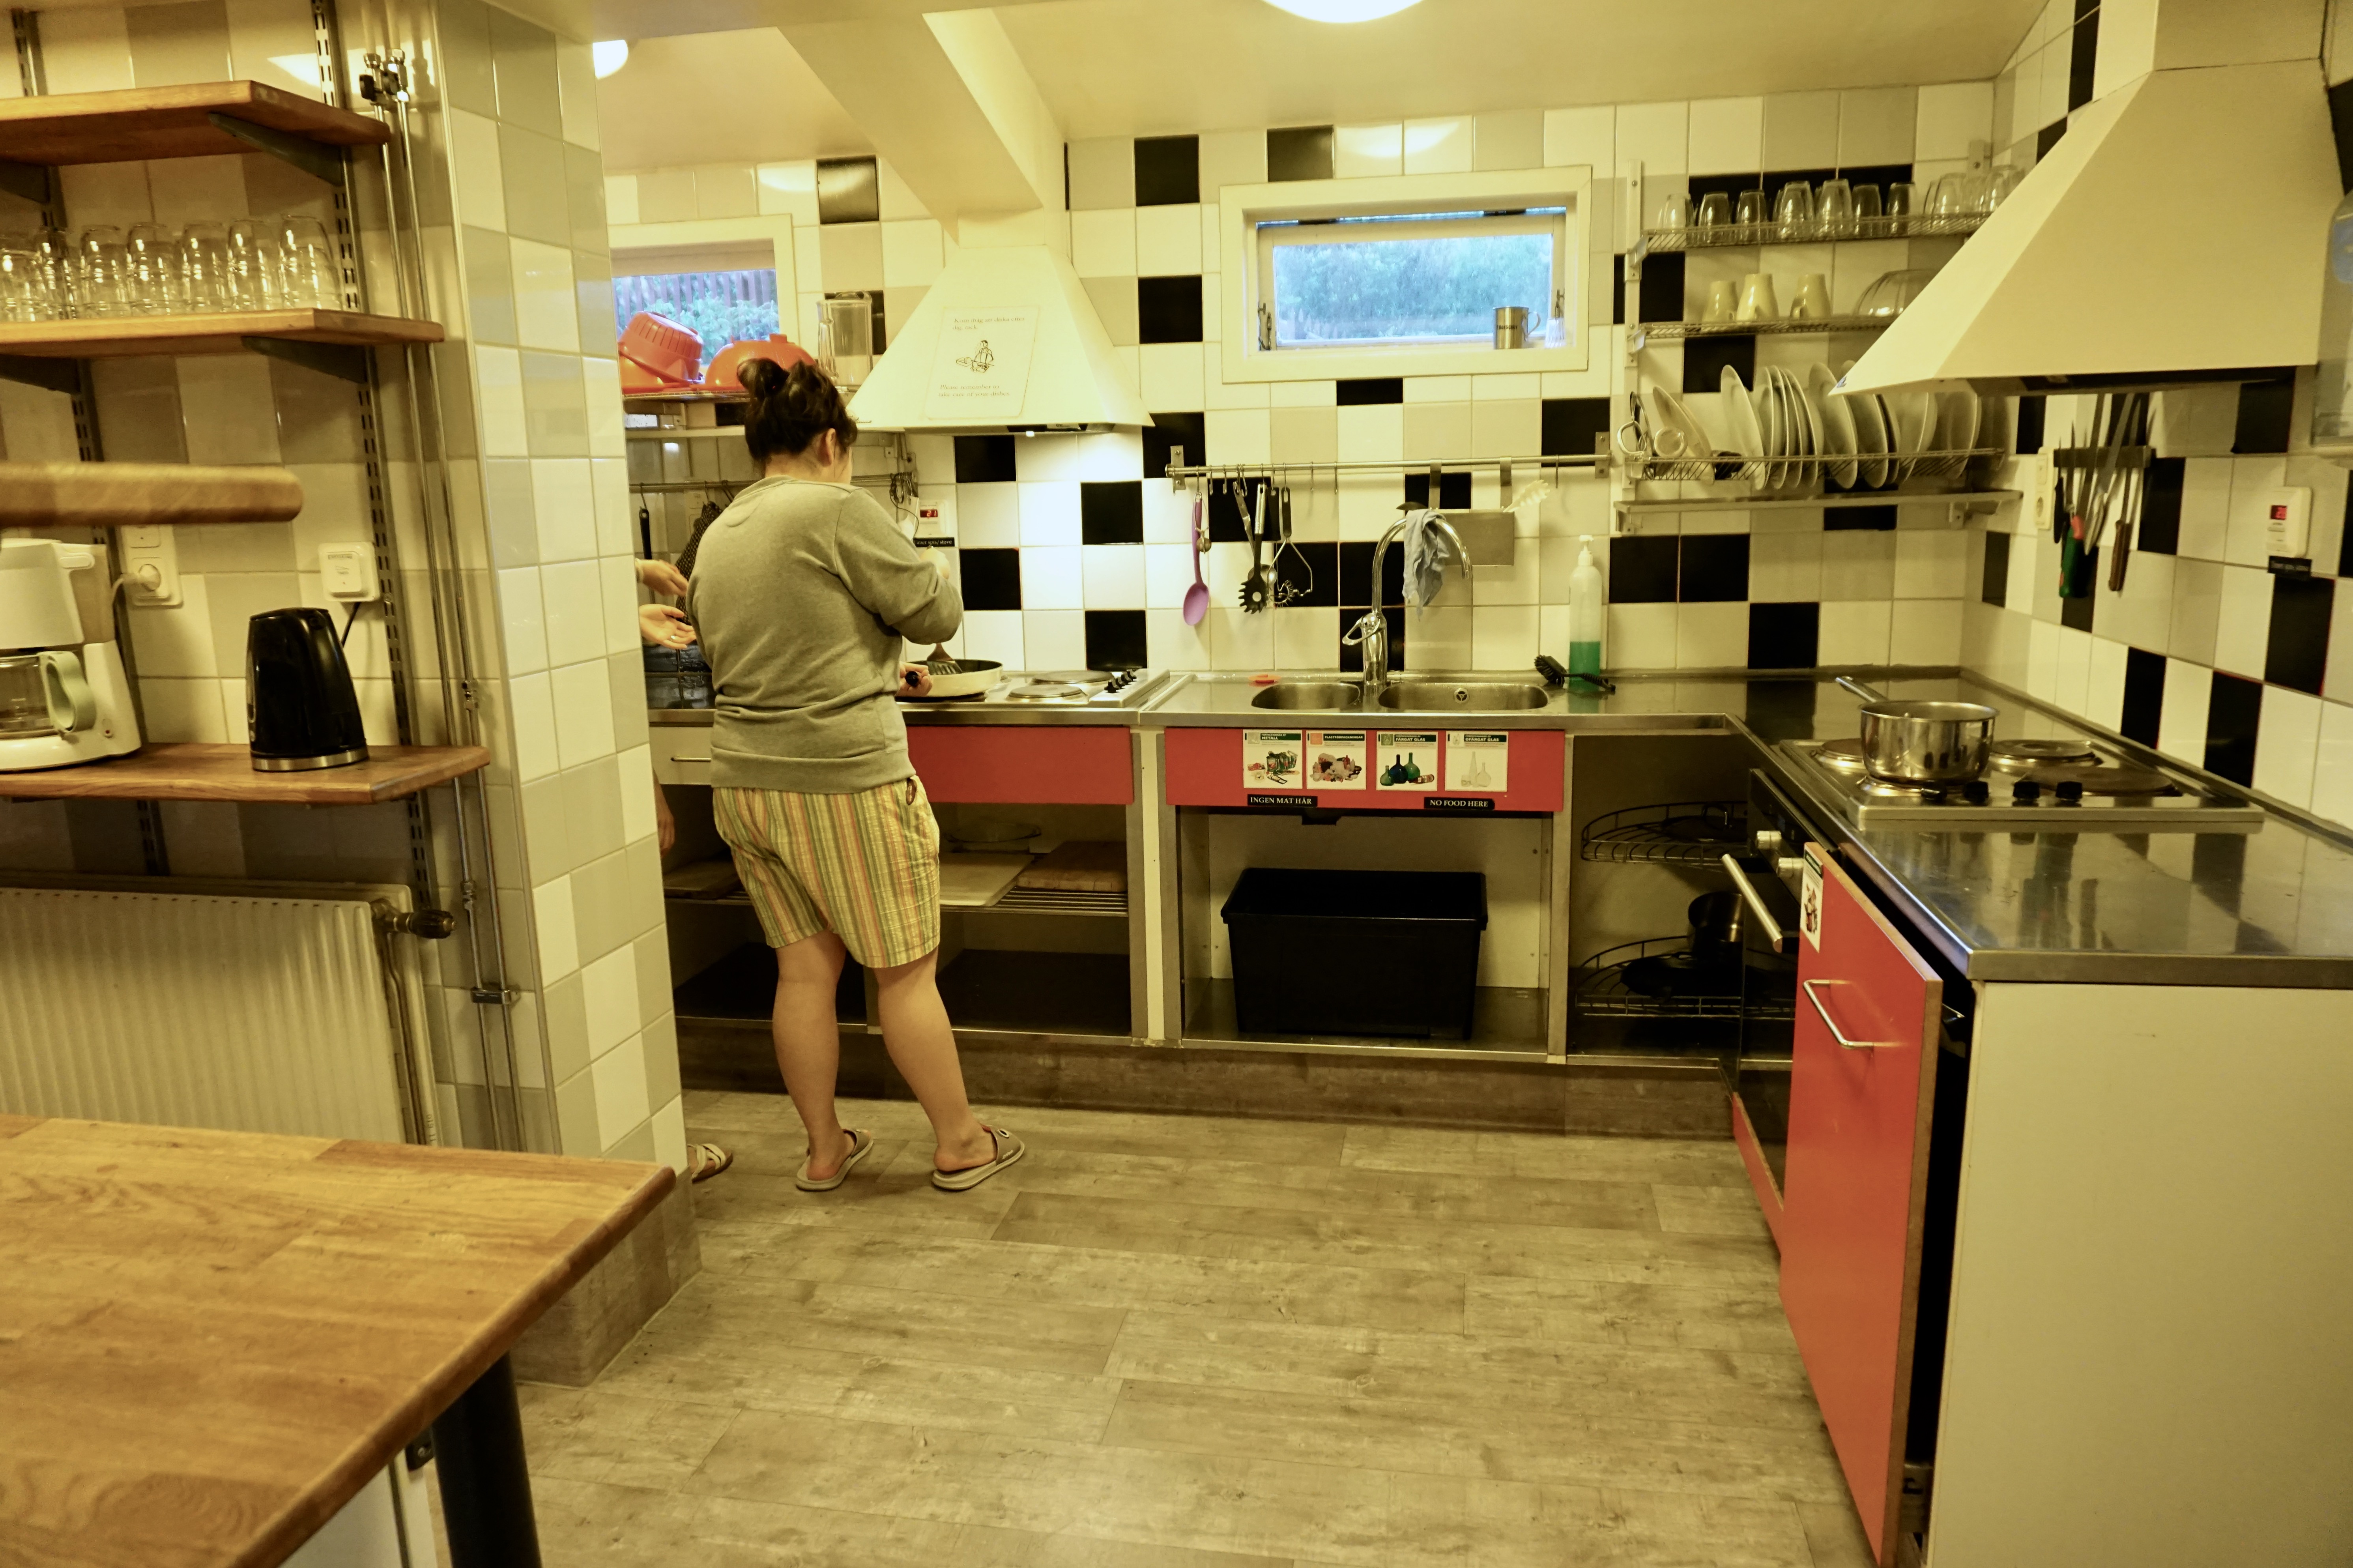 guest kitchen at zinkensdamm hostel